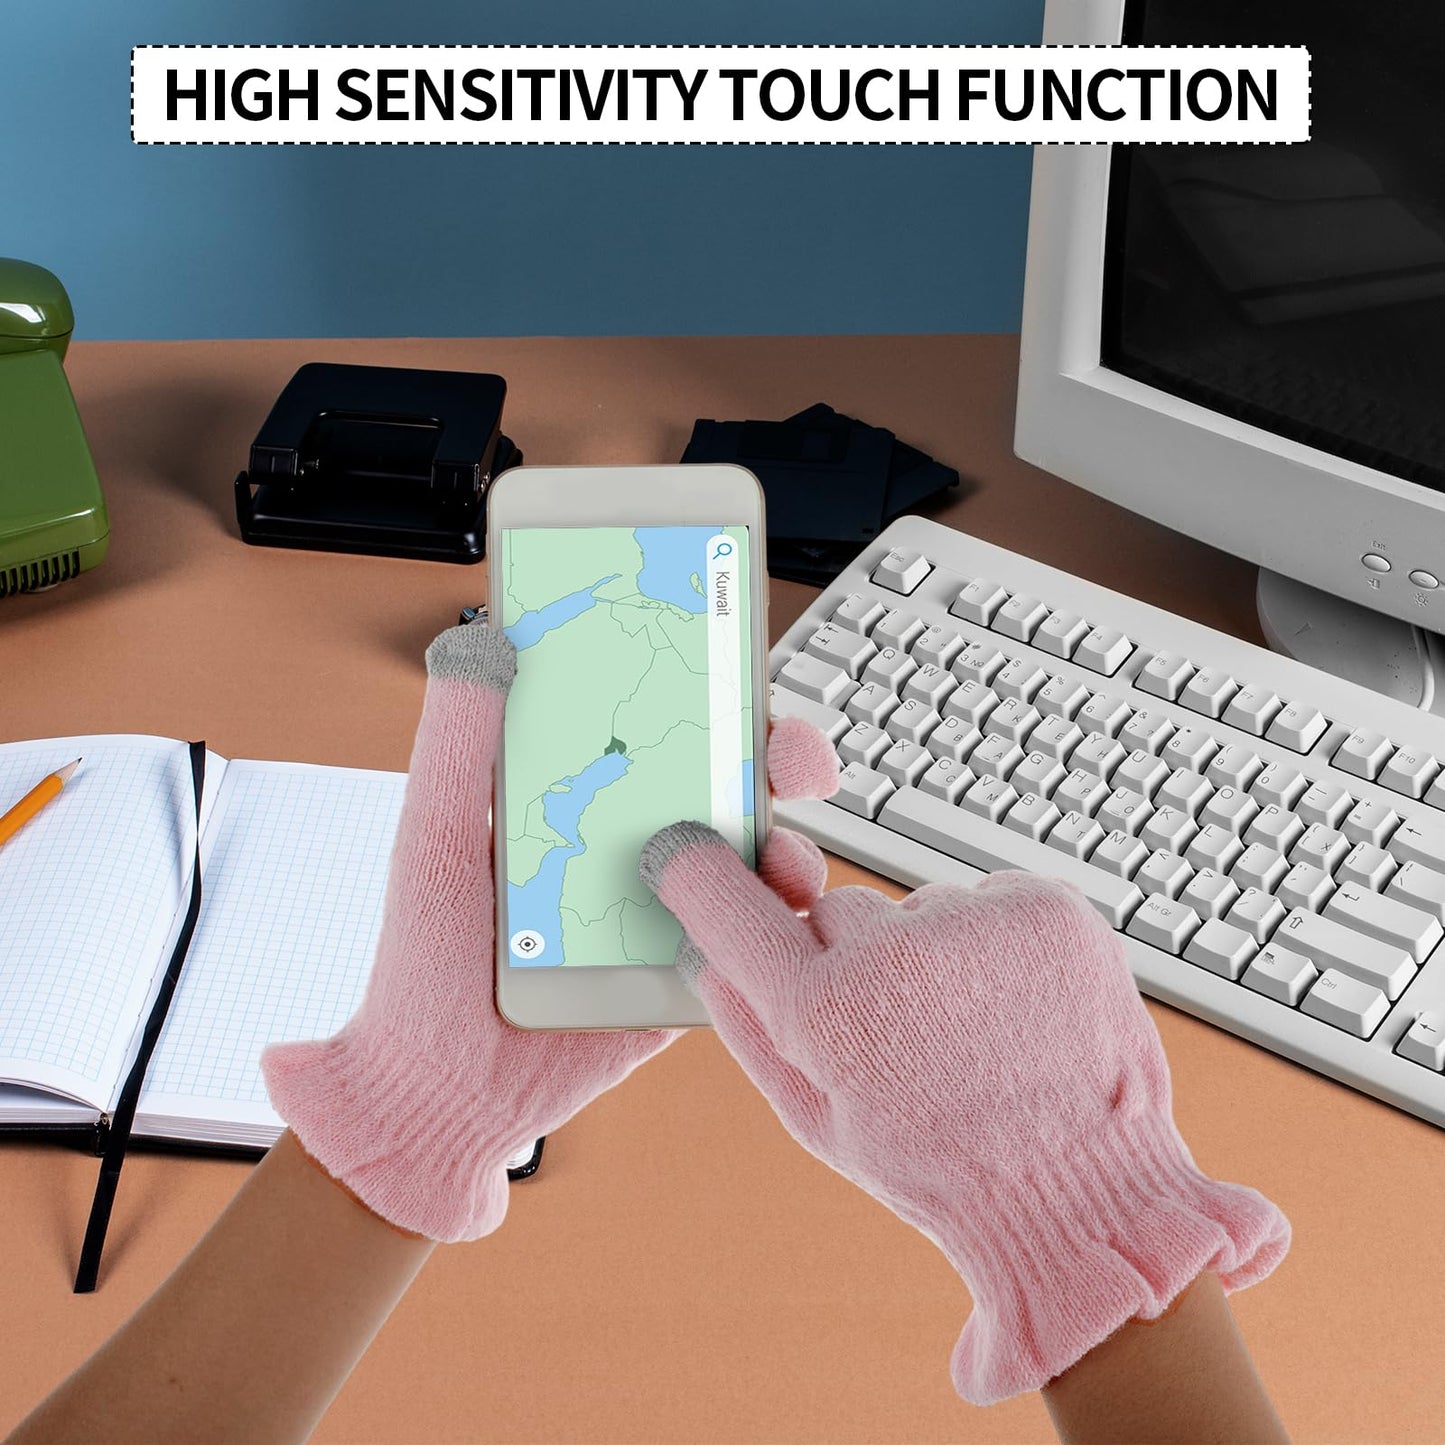 2 Pairs Cotton Moisturizing Touchscreen Fingertips Gloves Overnight, Dry Hands Moisturizing Gloves for Women & Men Reusable Gloves for Sleeping for Eczema